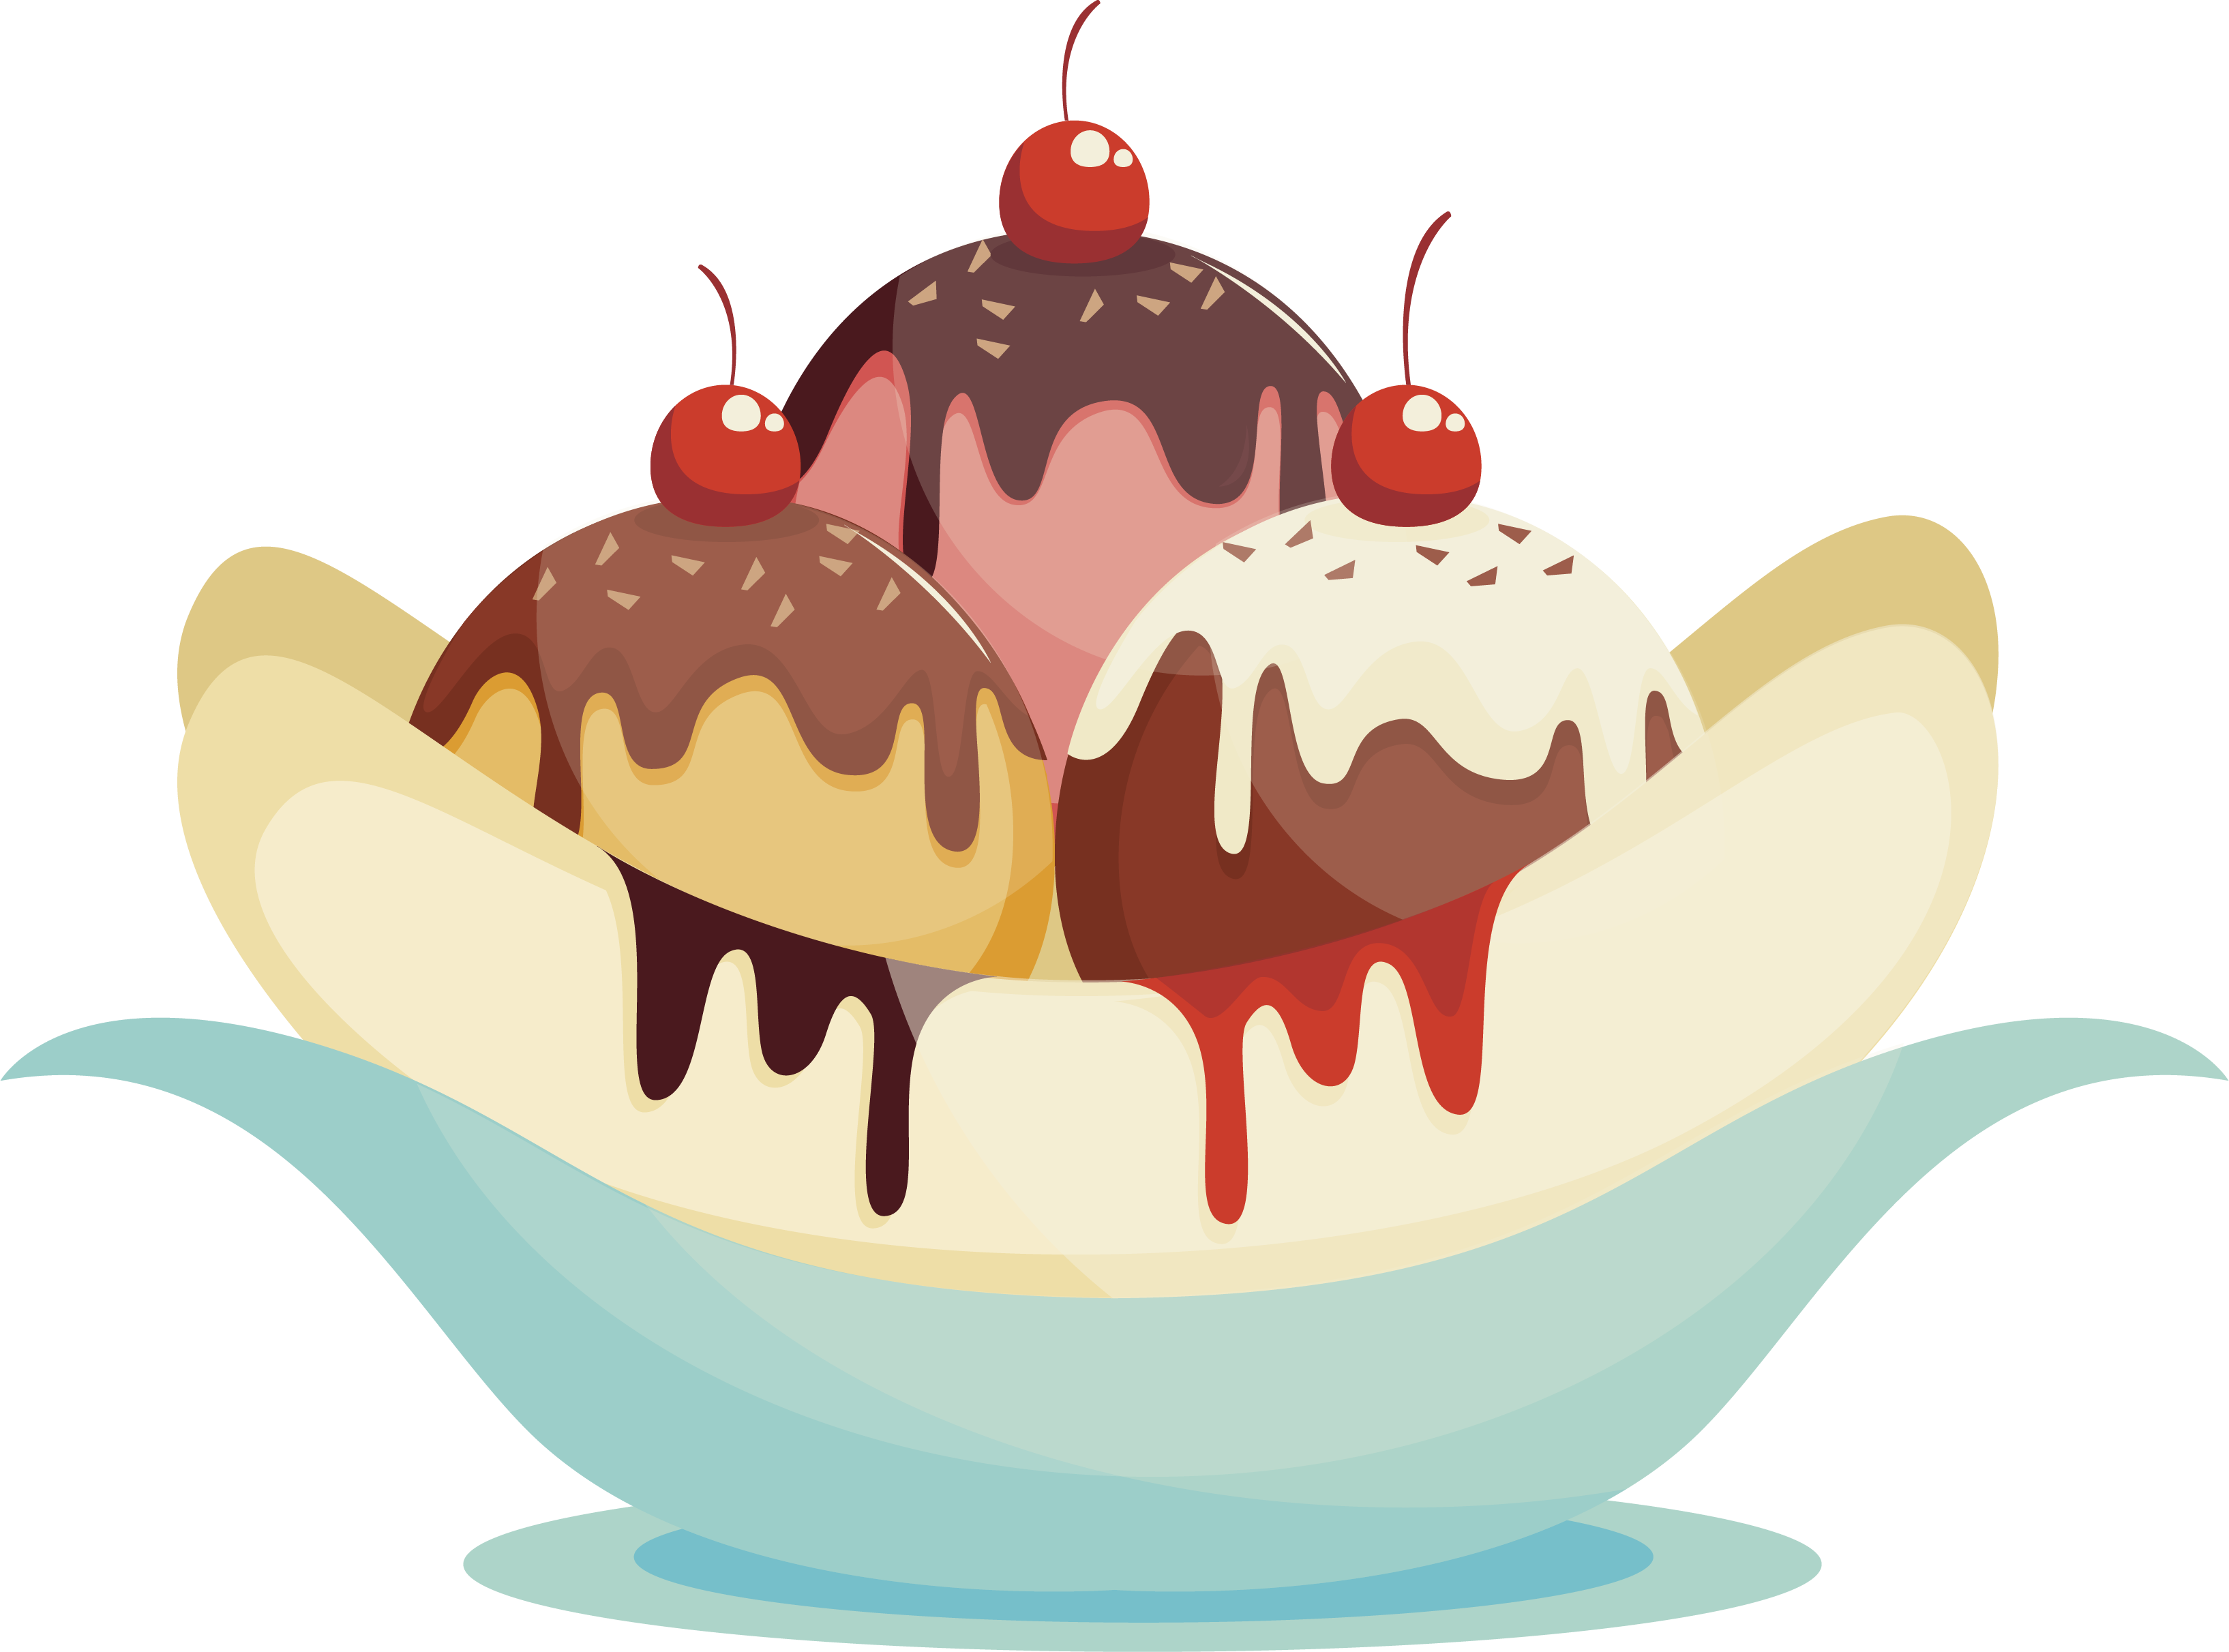 卡通冰淇淋素材 卡通冰淇淋 巧克力酱香蕉船素材-90设计 - Banana Split (3269x2423)